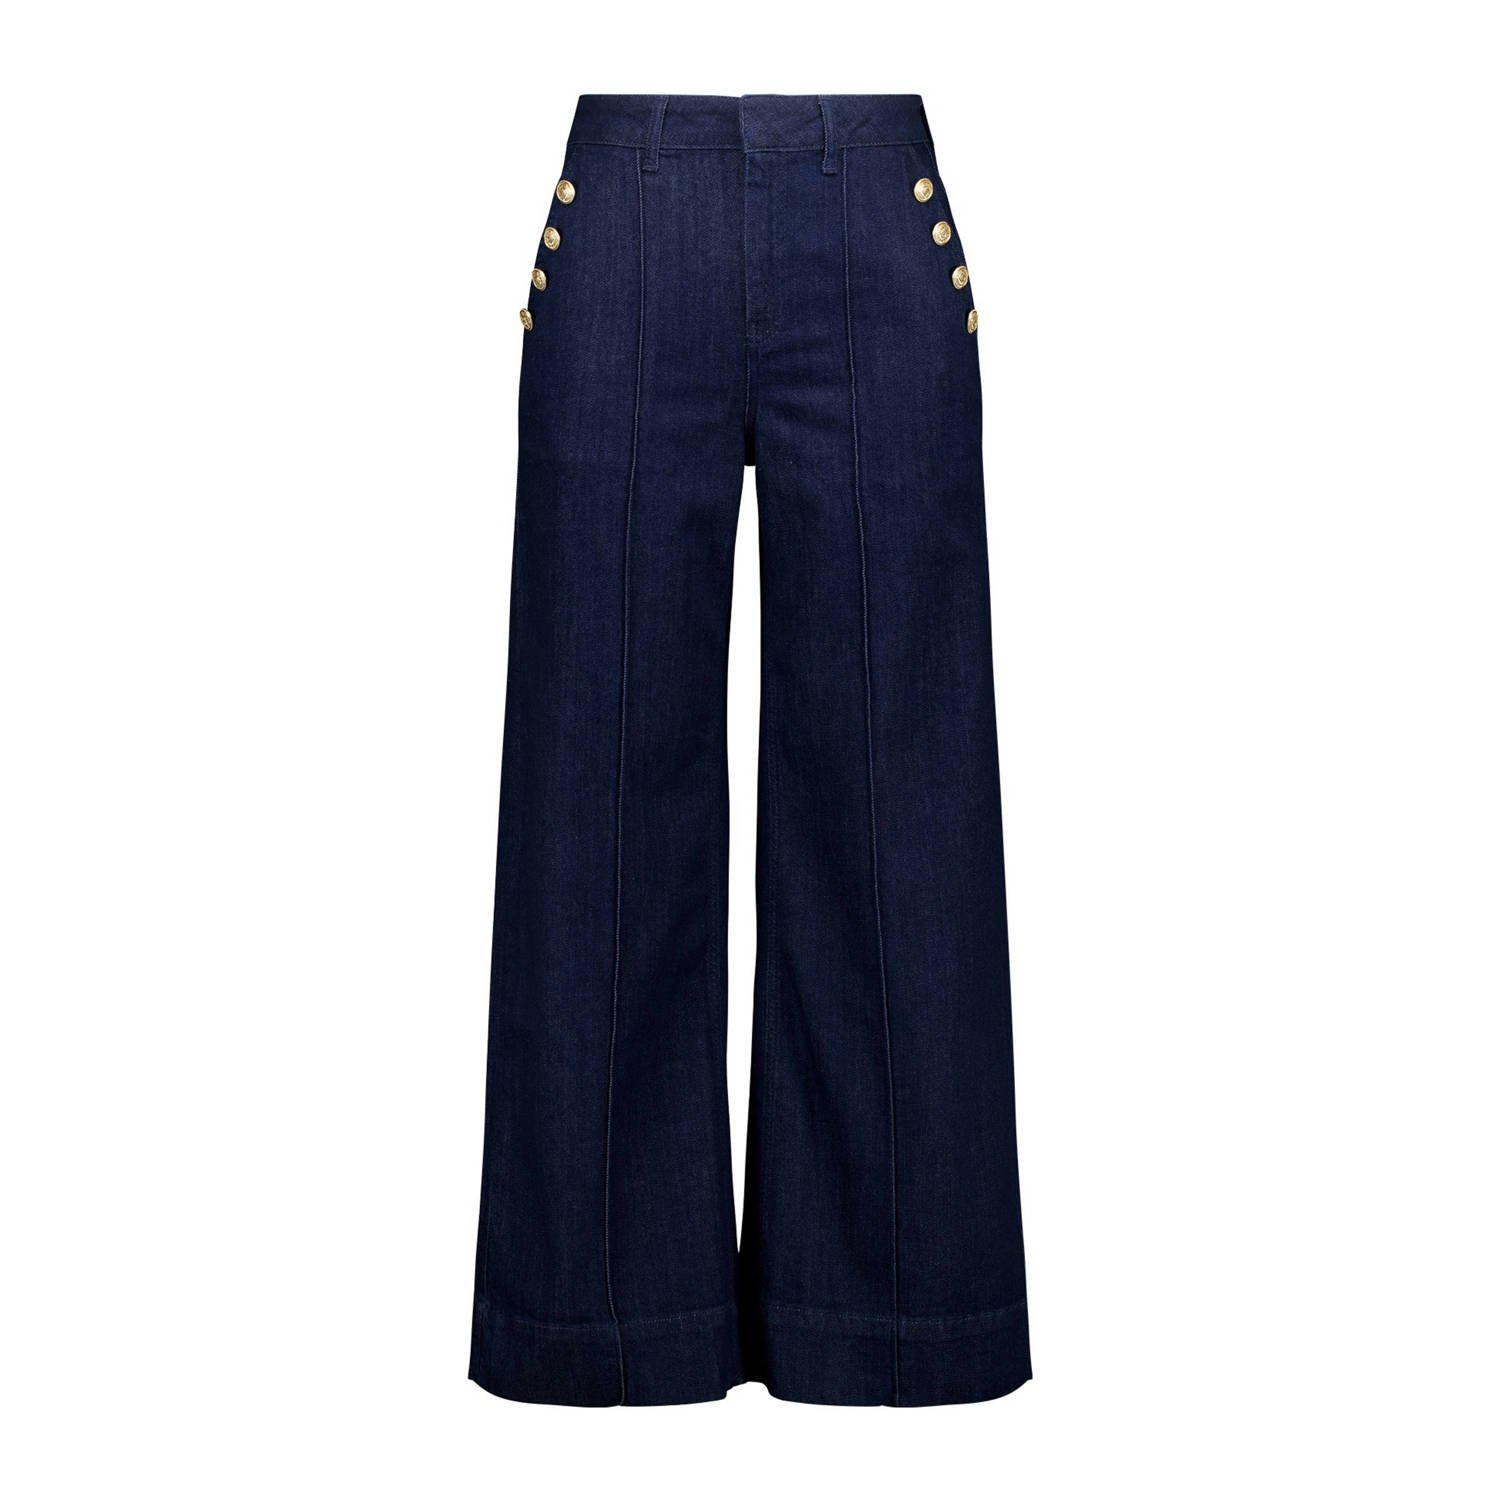 MS Mode high waist flared jeans dark blue denim